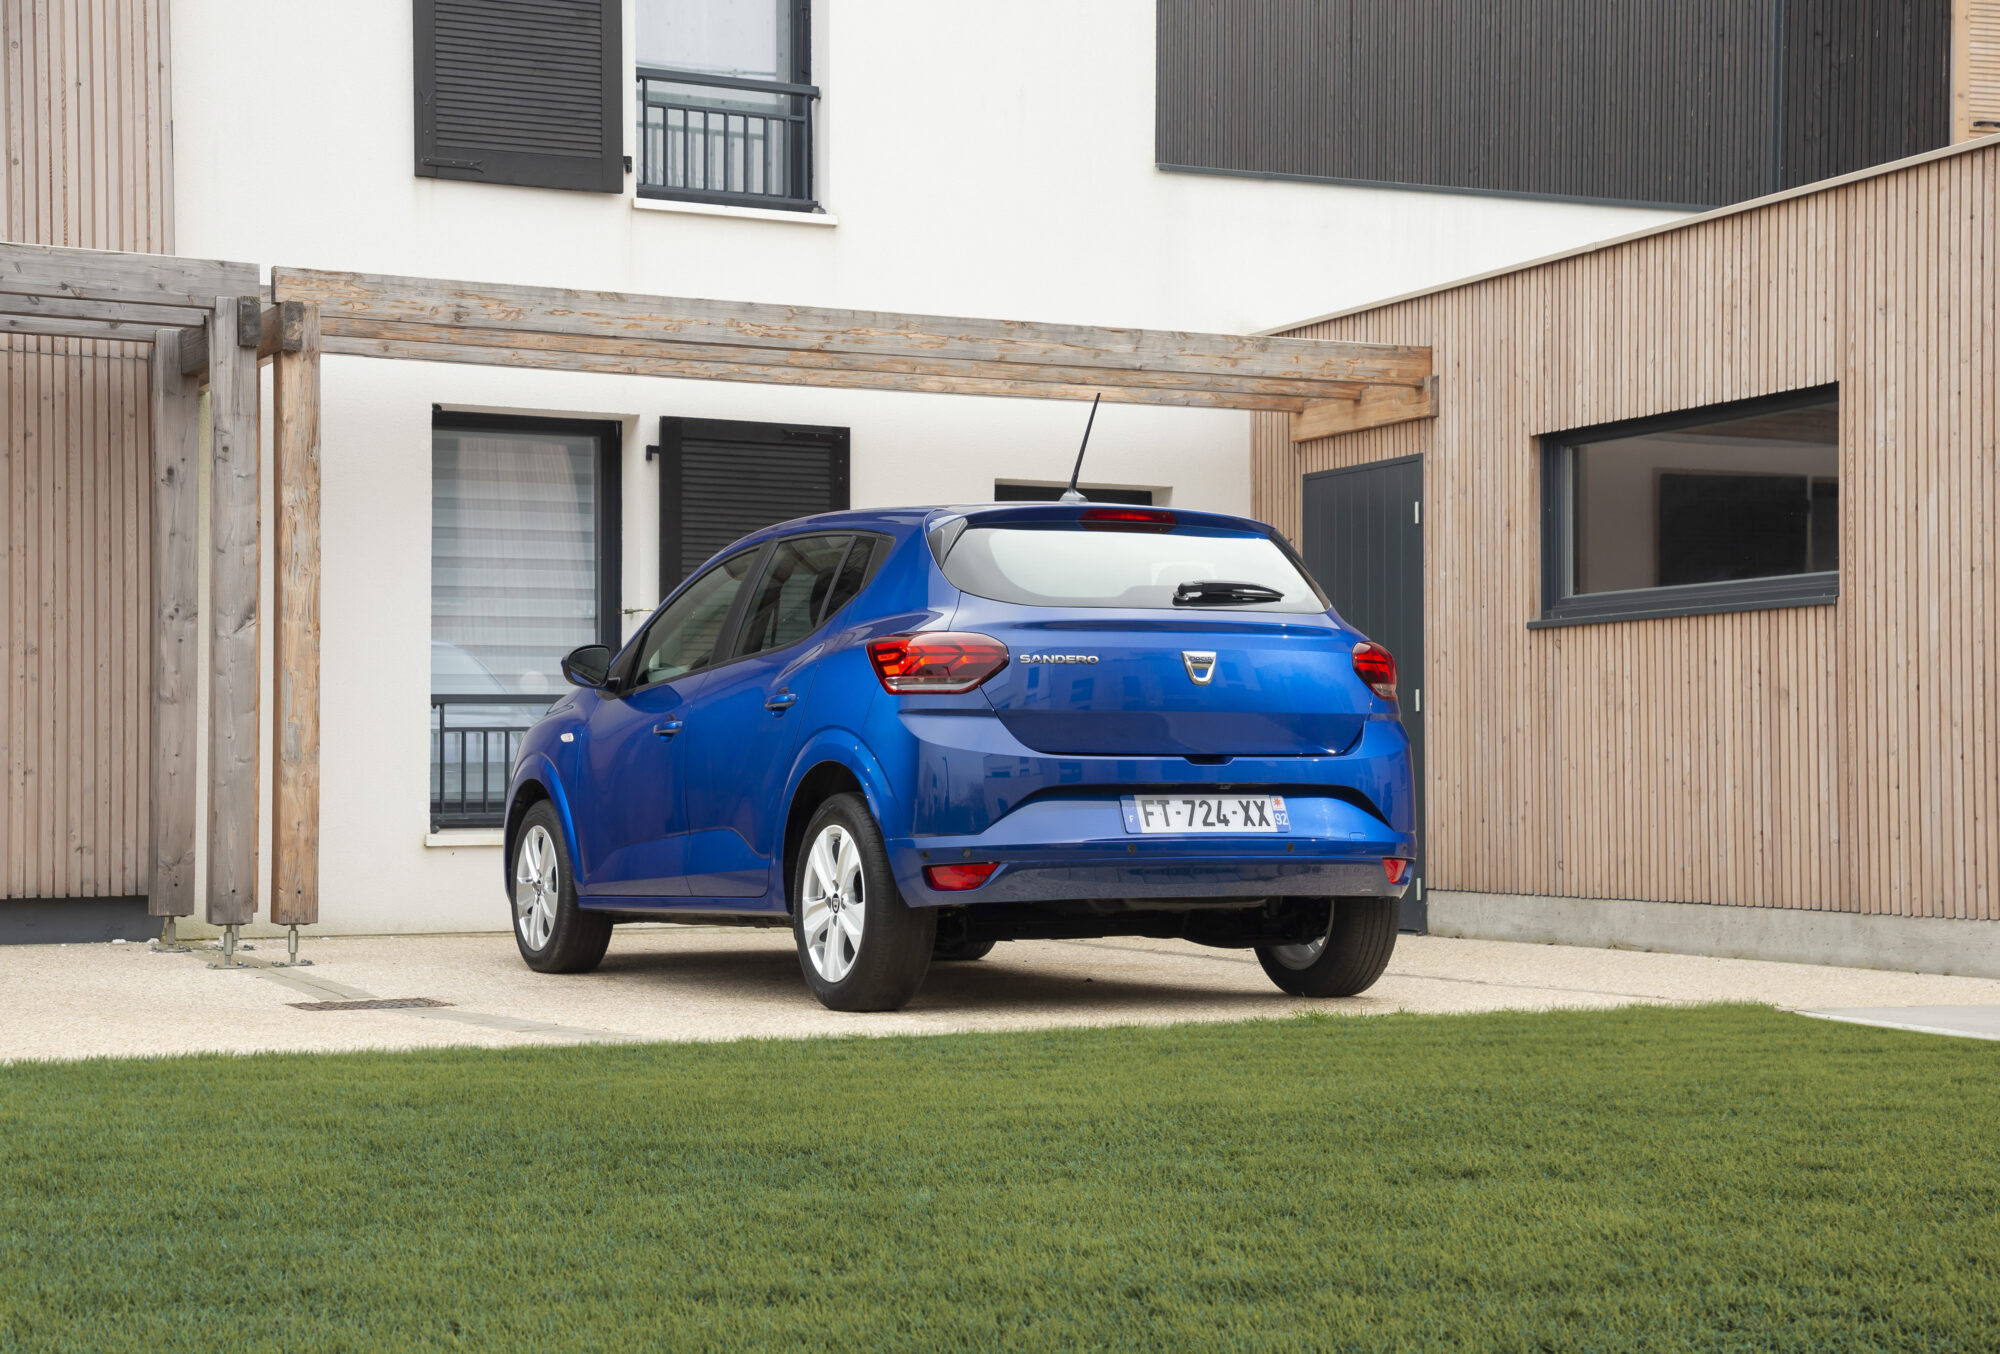 2020 - New Dacia SANDERO tests drive